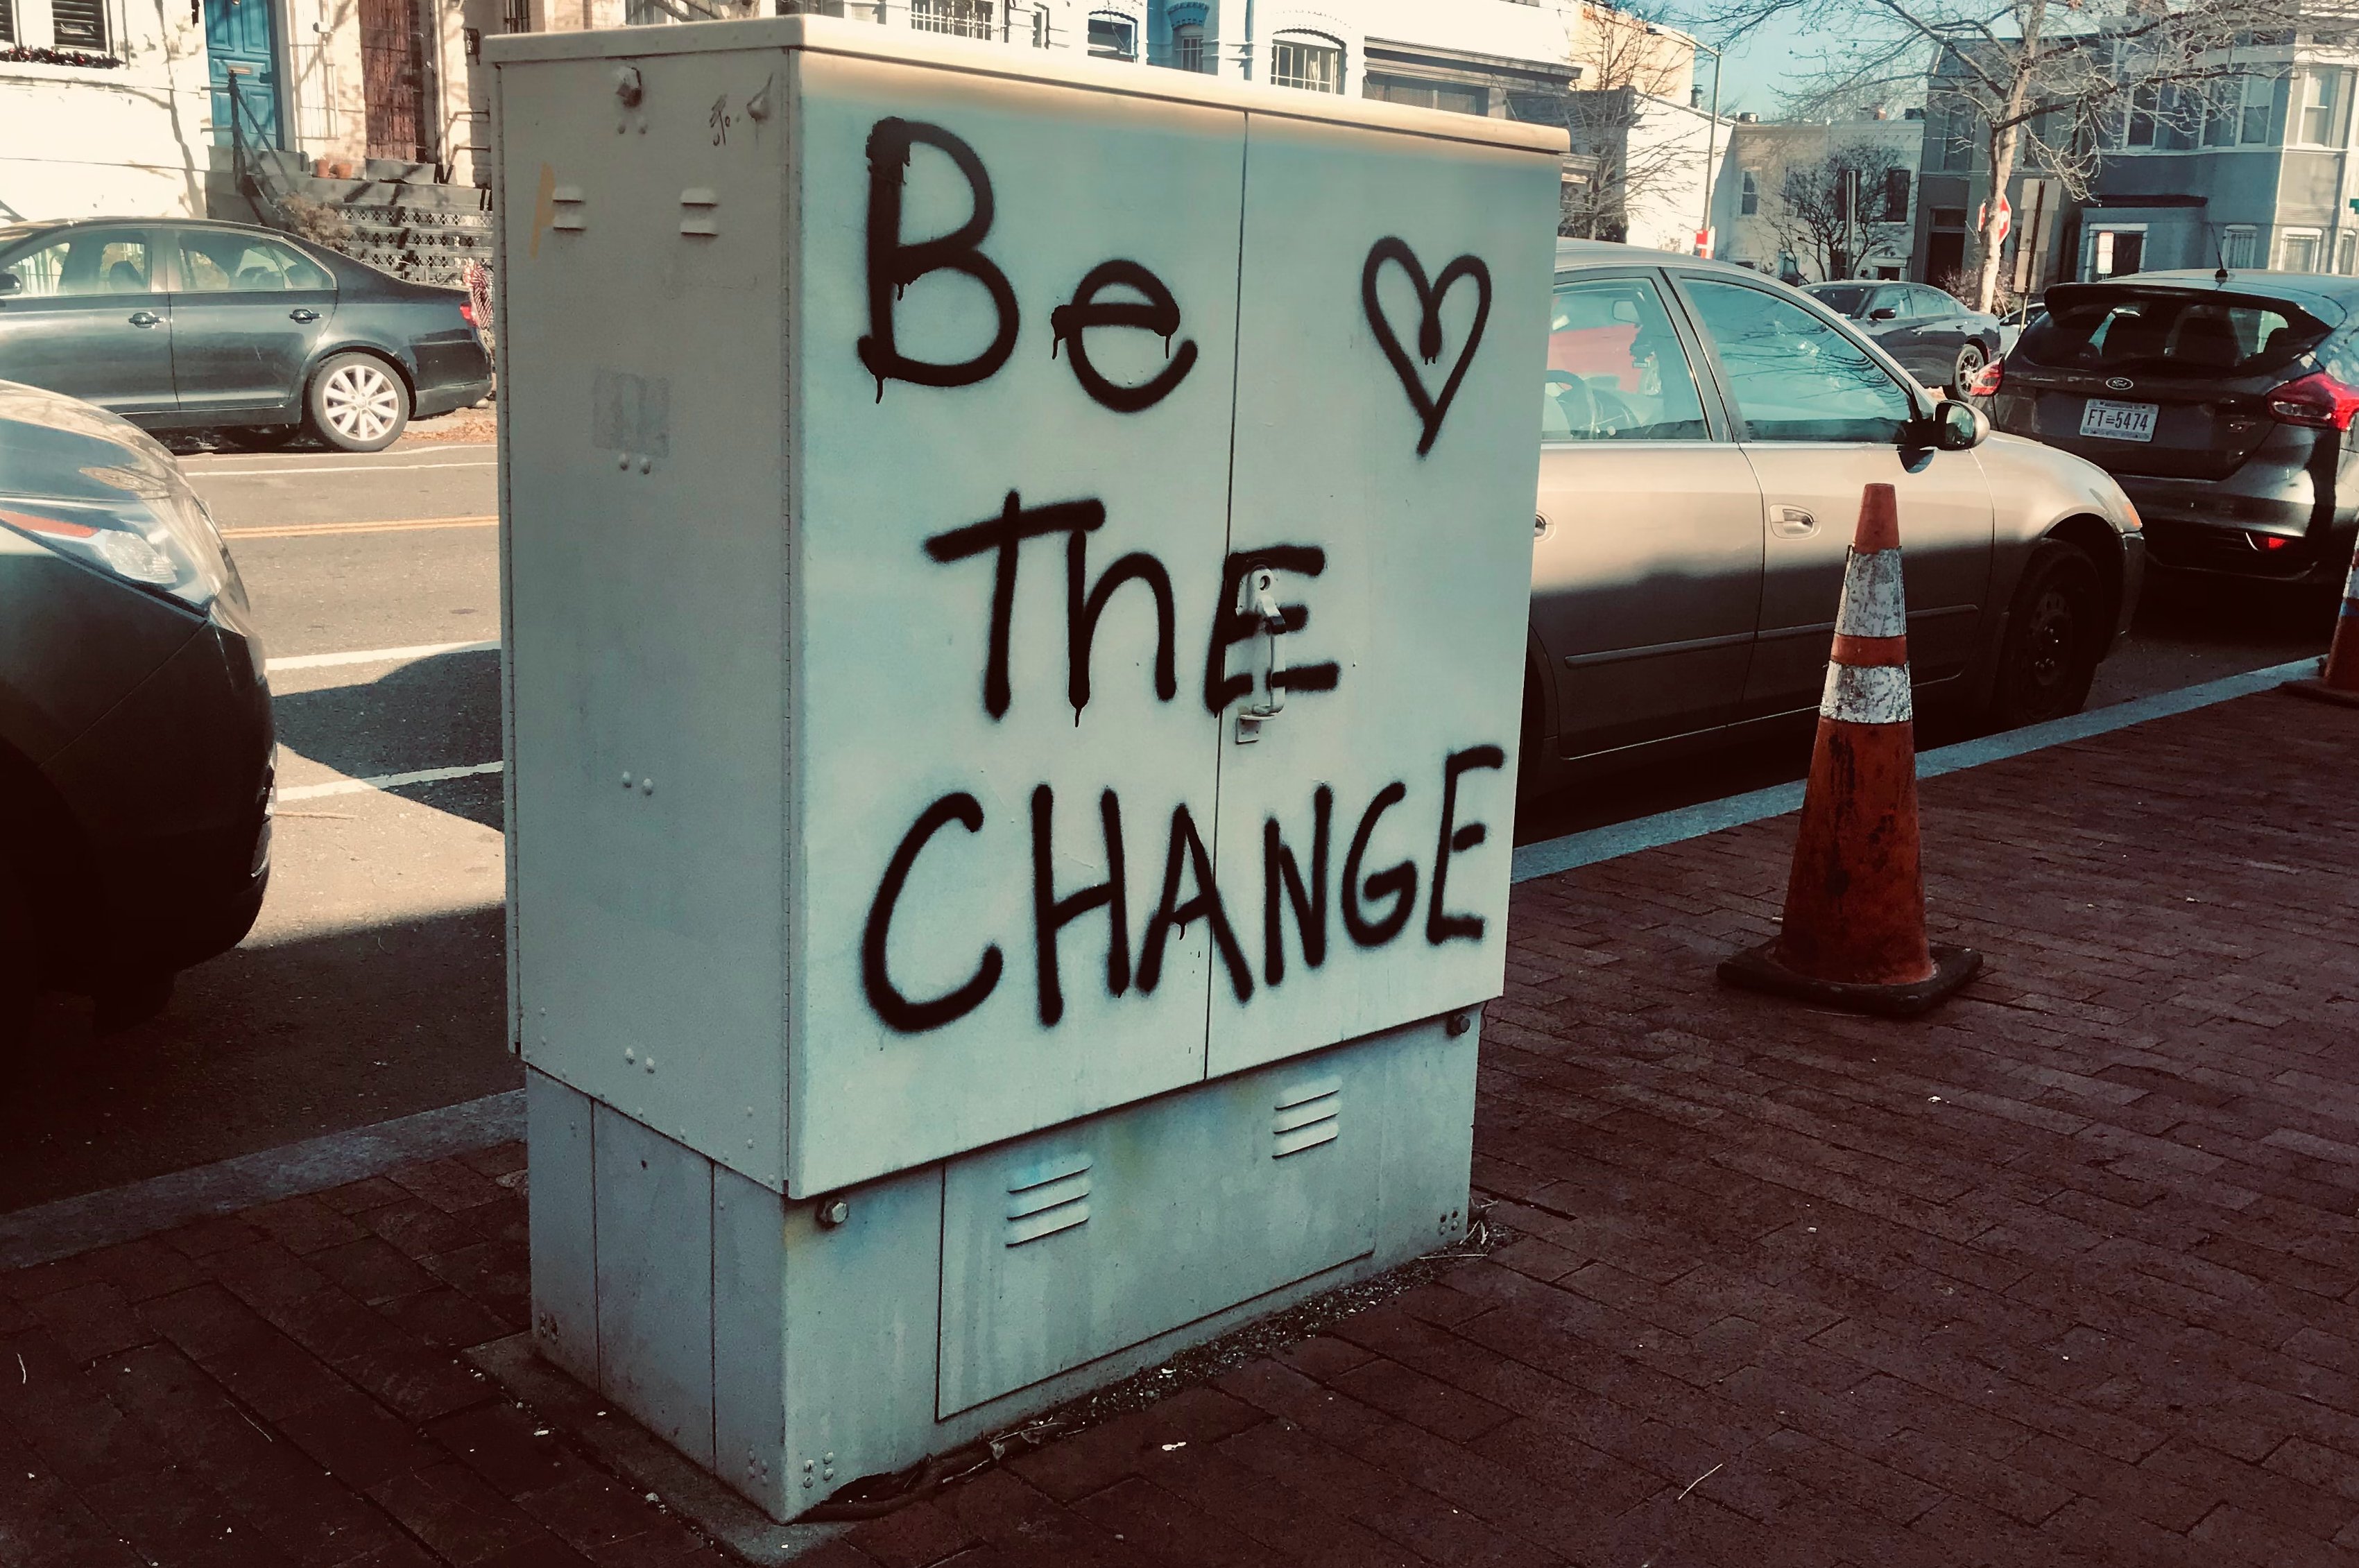 Stromkasten mit Spruch: "Be the Change".